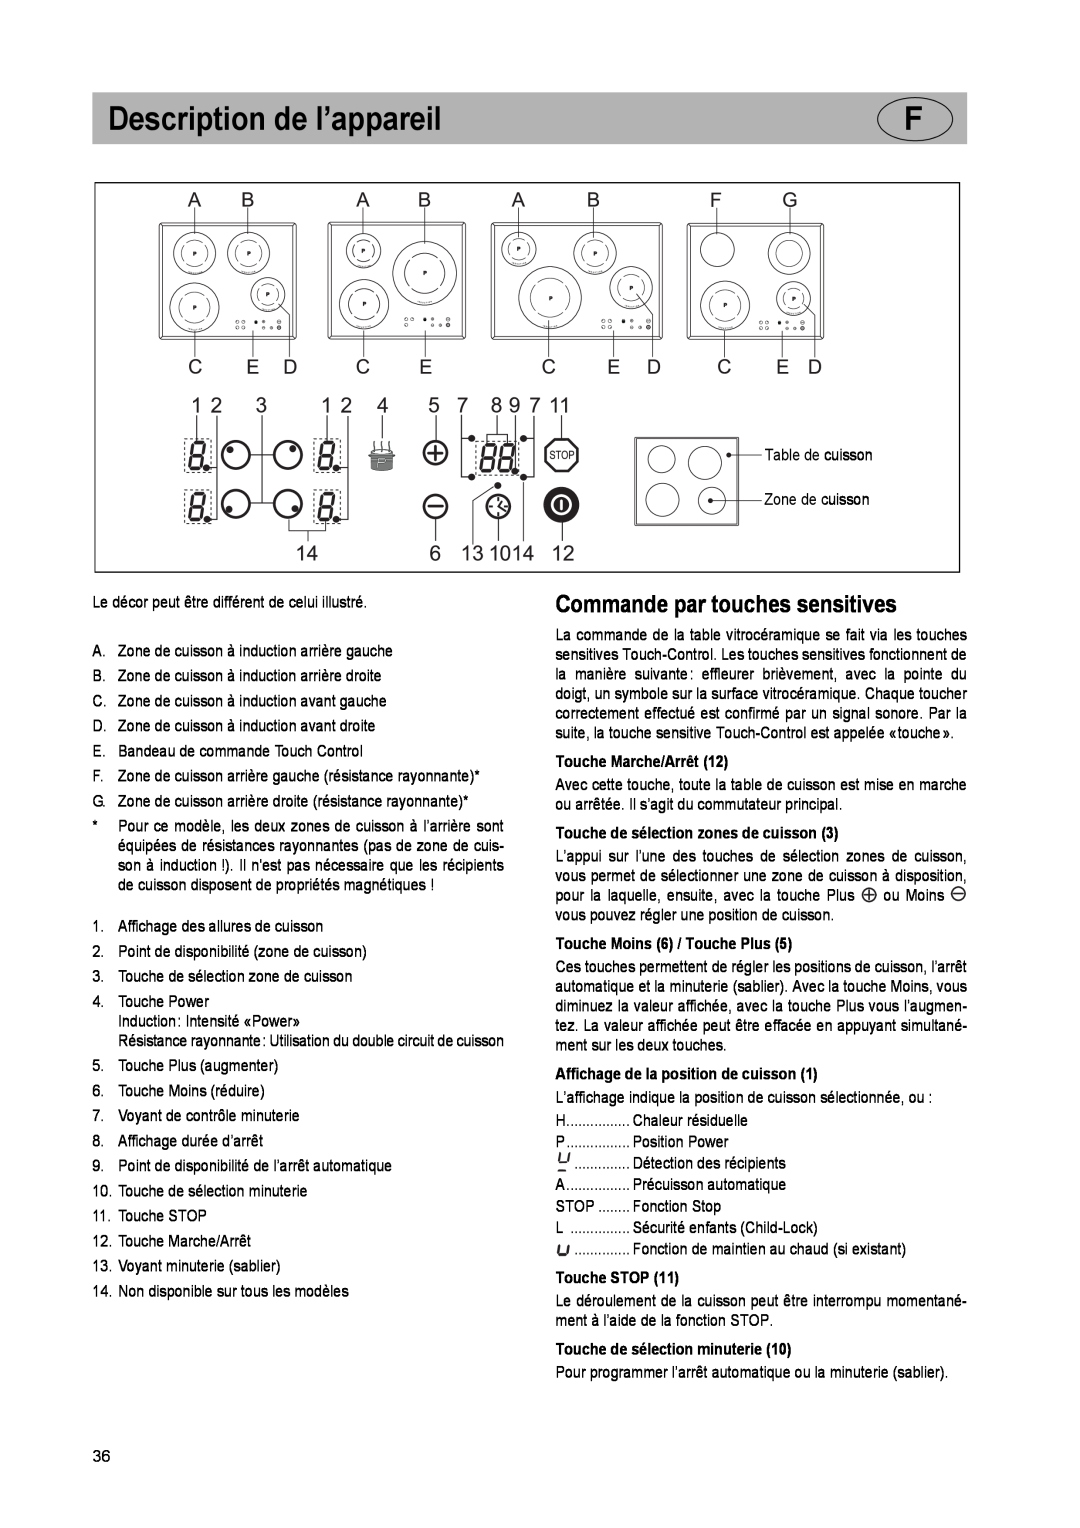 Smeg SE2842ID2 manual Description de l’appareil, Commande par touches sensitives, Touche Marche/Arrêt, Touche STOP 